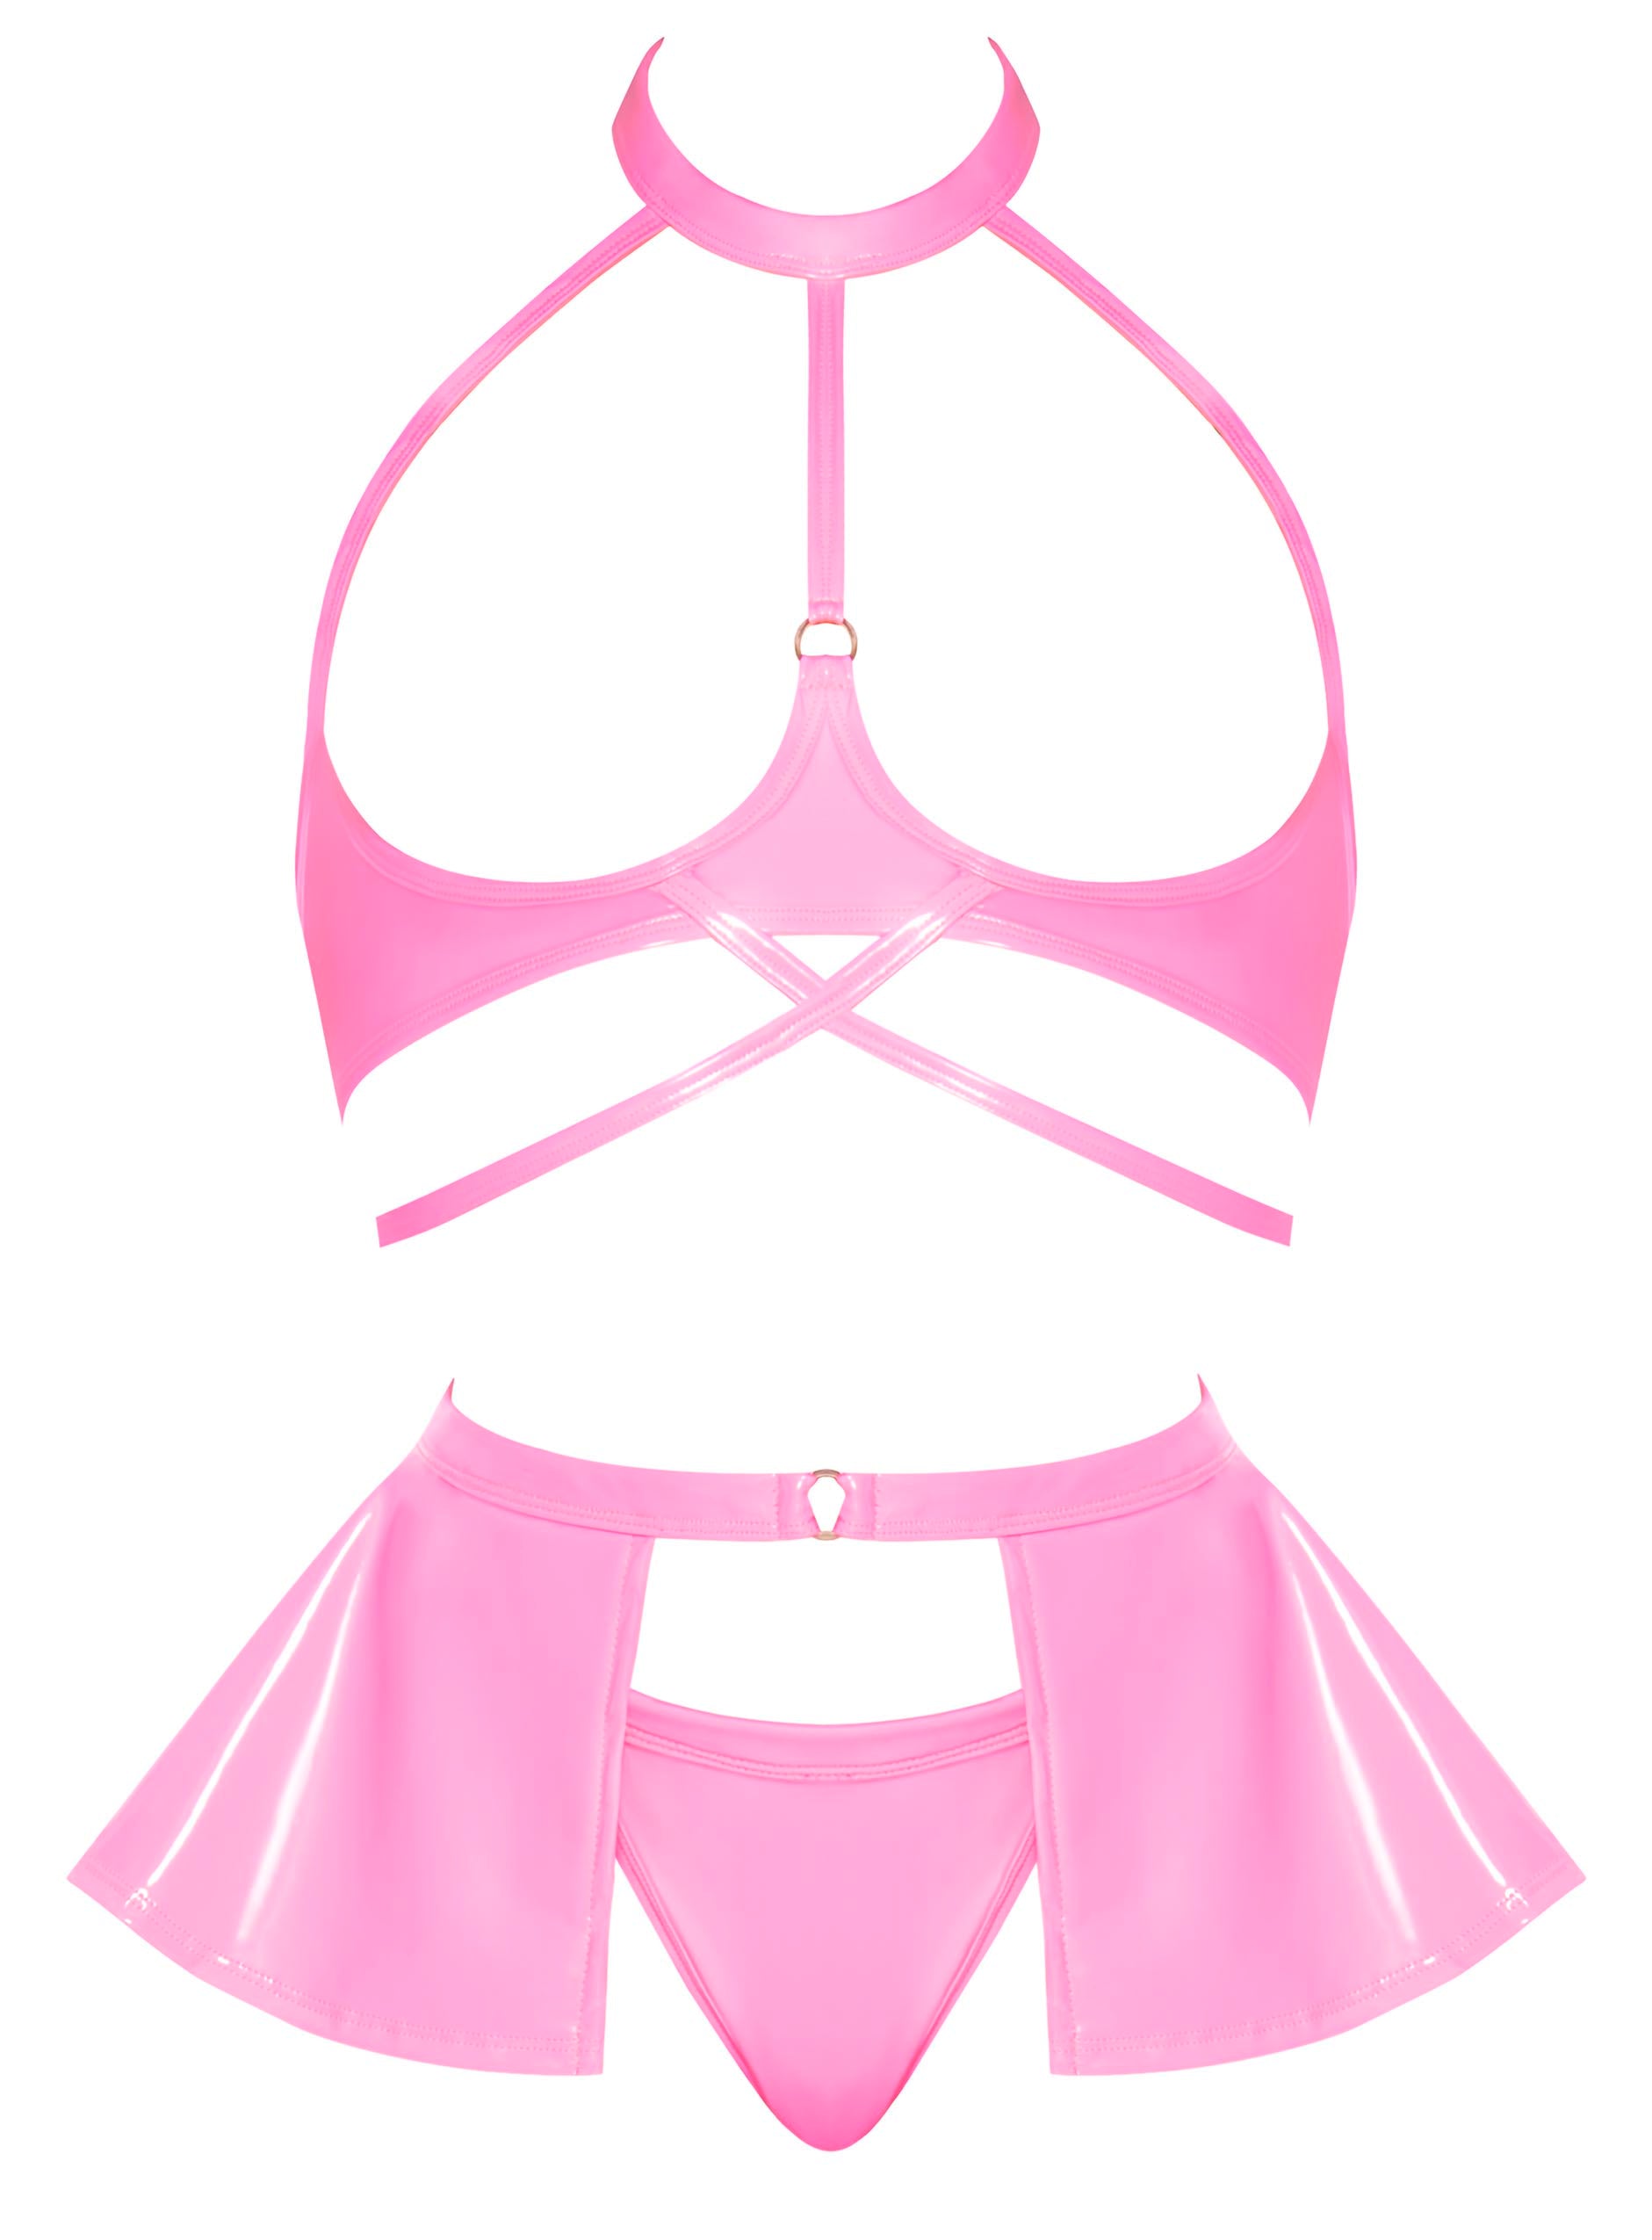 Club Candy Bra Skirt & Thong Pink L/xl